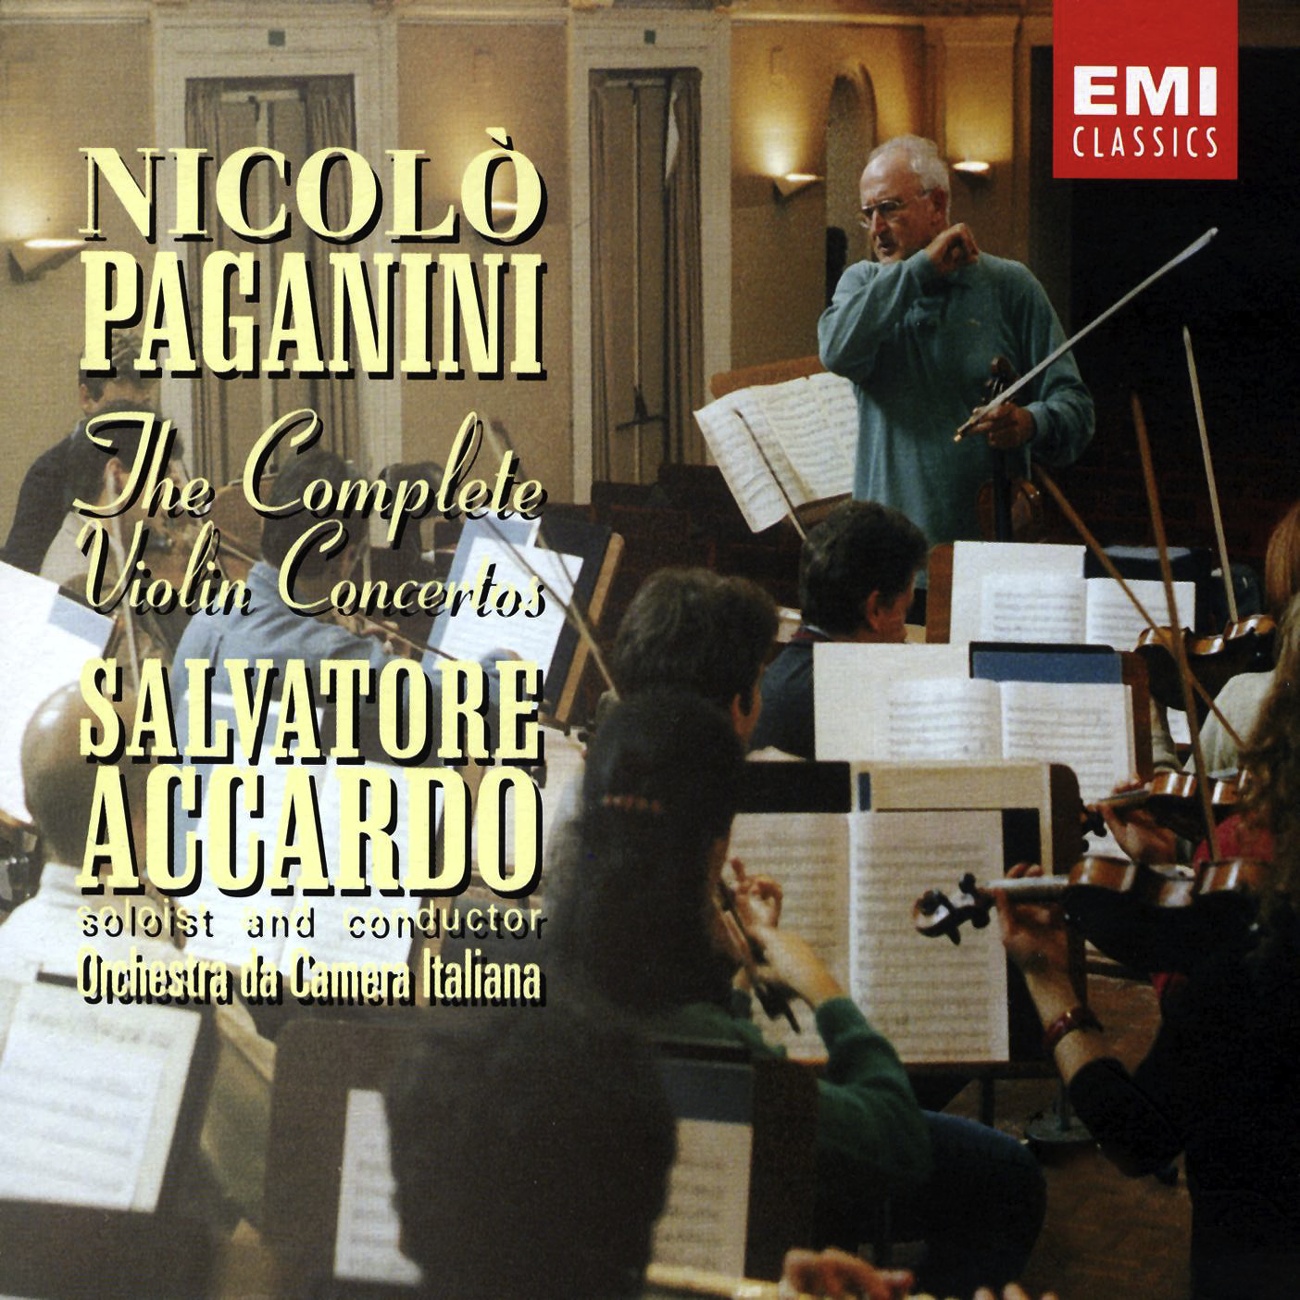 Violin Concerto N.0 in E Minor: I. Risoluto (Cadenza Accardo)